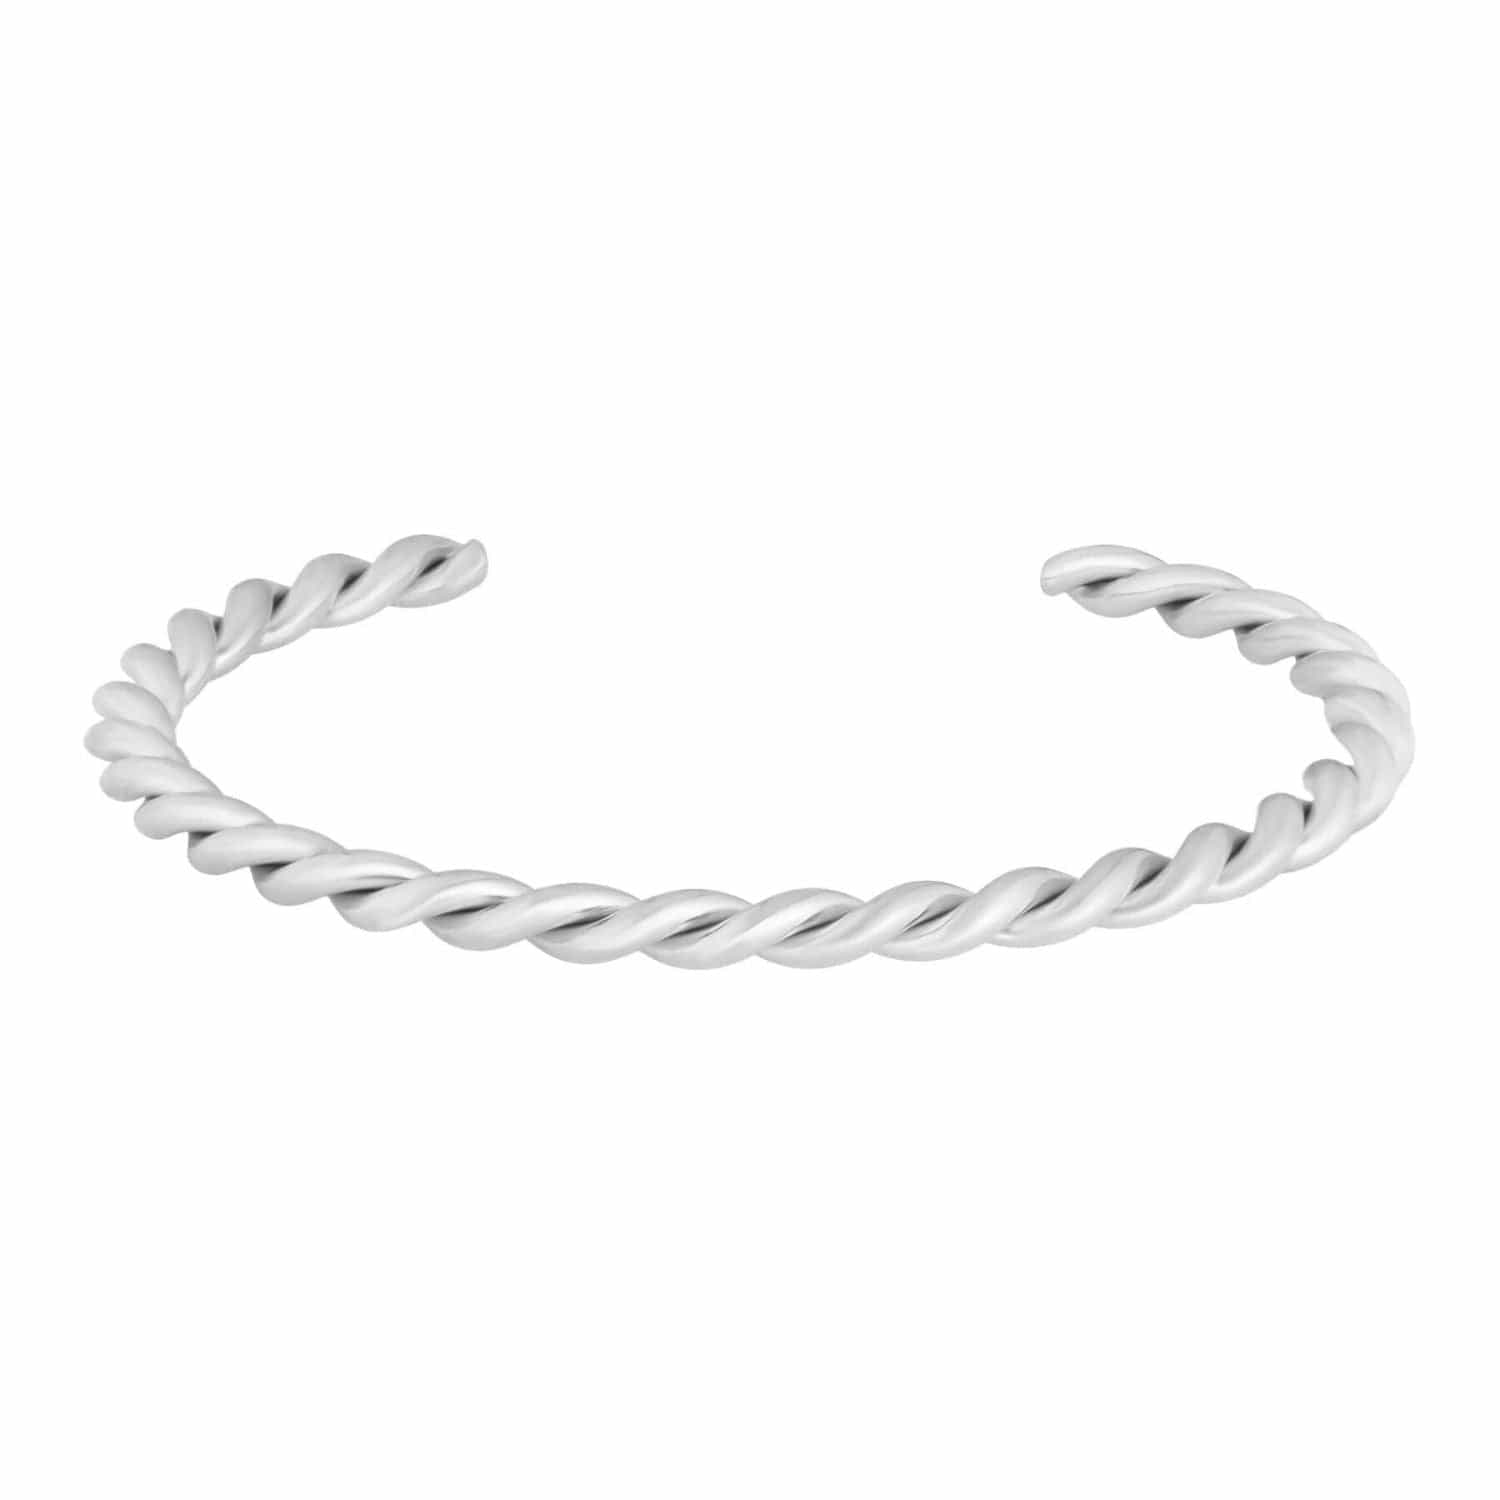 BohoMoon Stainless Steel Twist Cuff Bracelet Silver